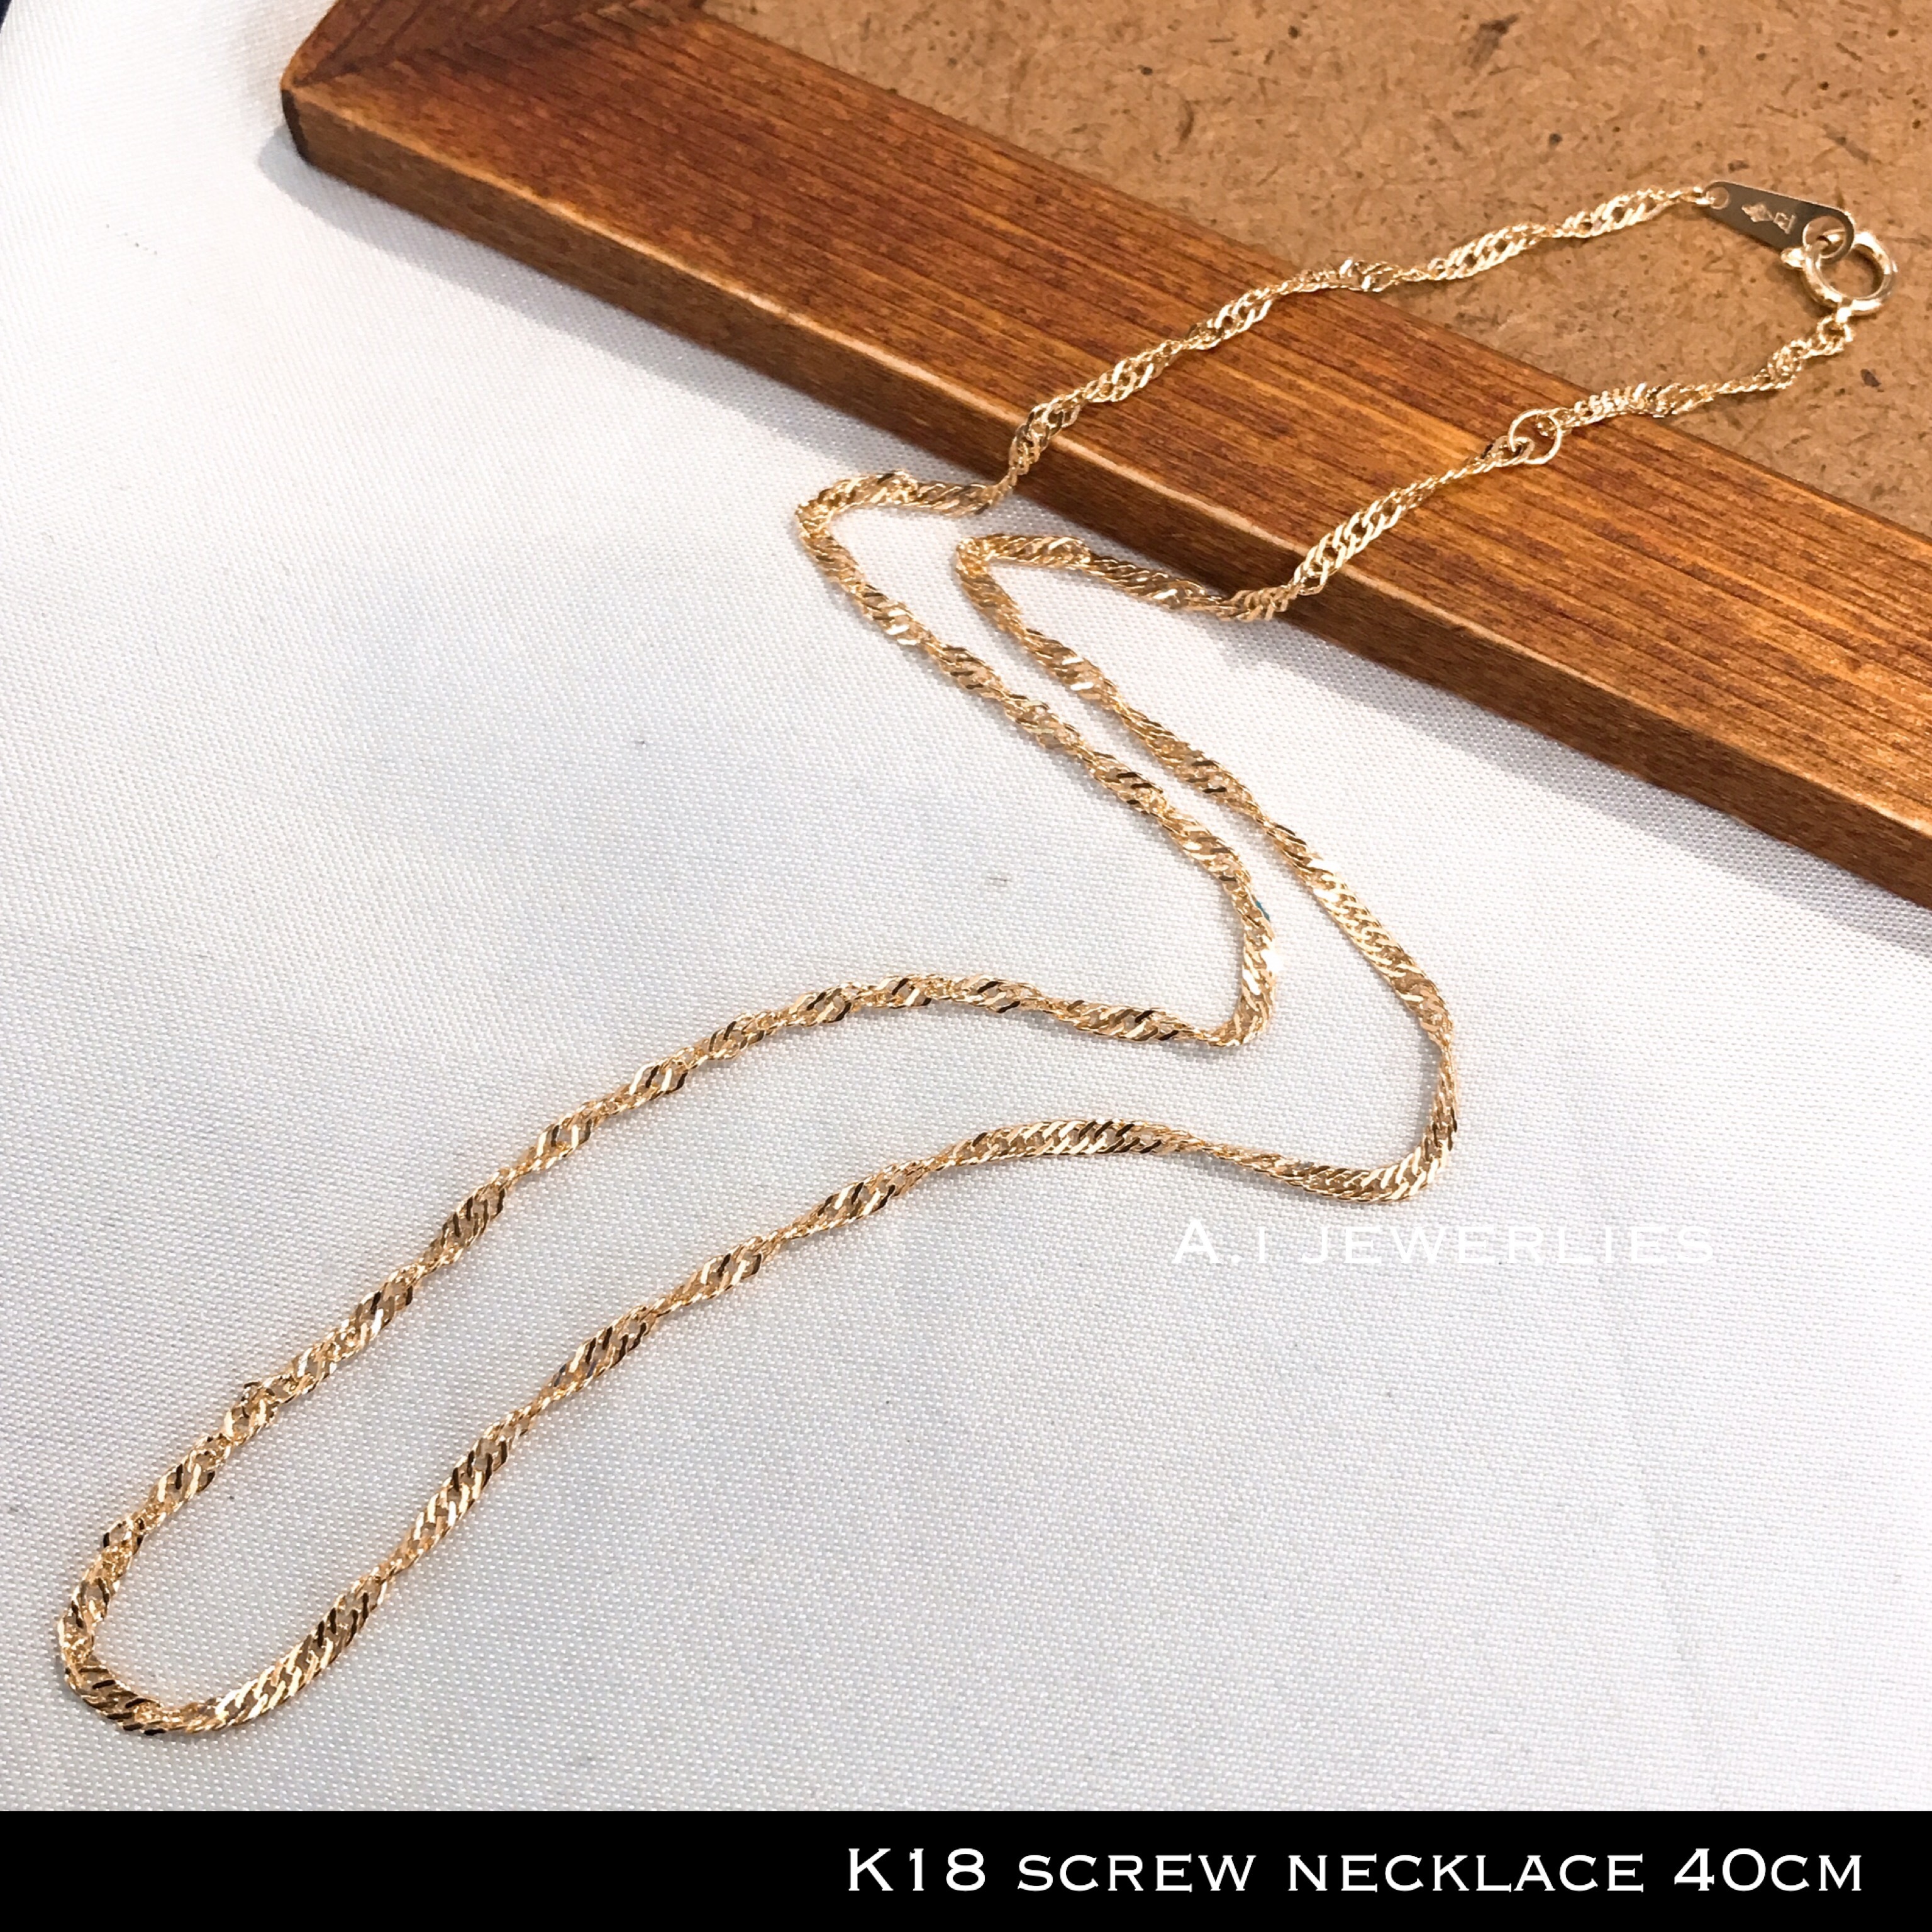 ネックレス チェーン 18金 スクリュー K18 スクリュー デザイン ネックレス チェーン 40cm 螺旋状 K18 Screw Necklace 40cm A I Jewelries エイアイジュエリーズ